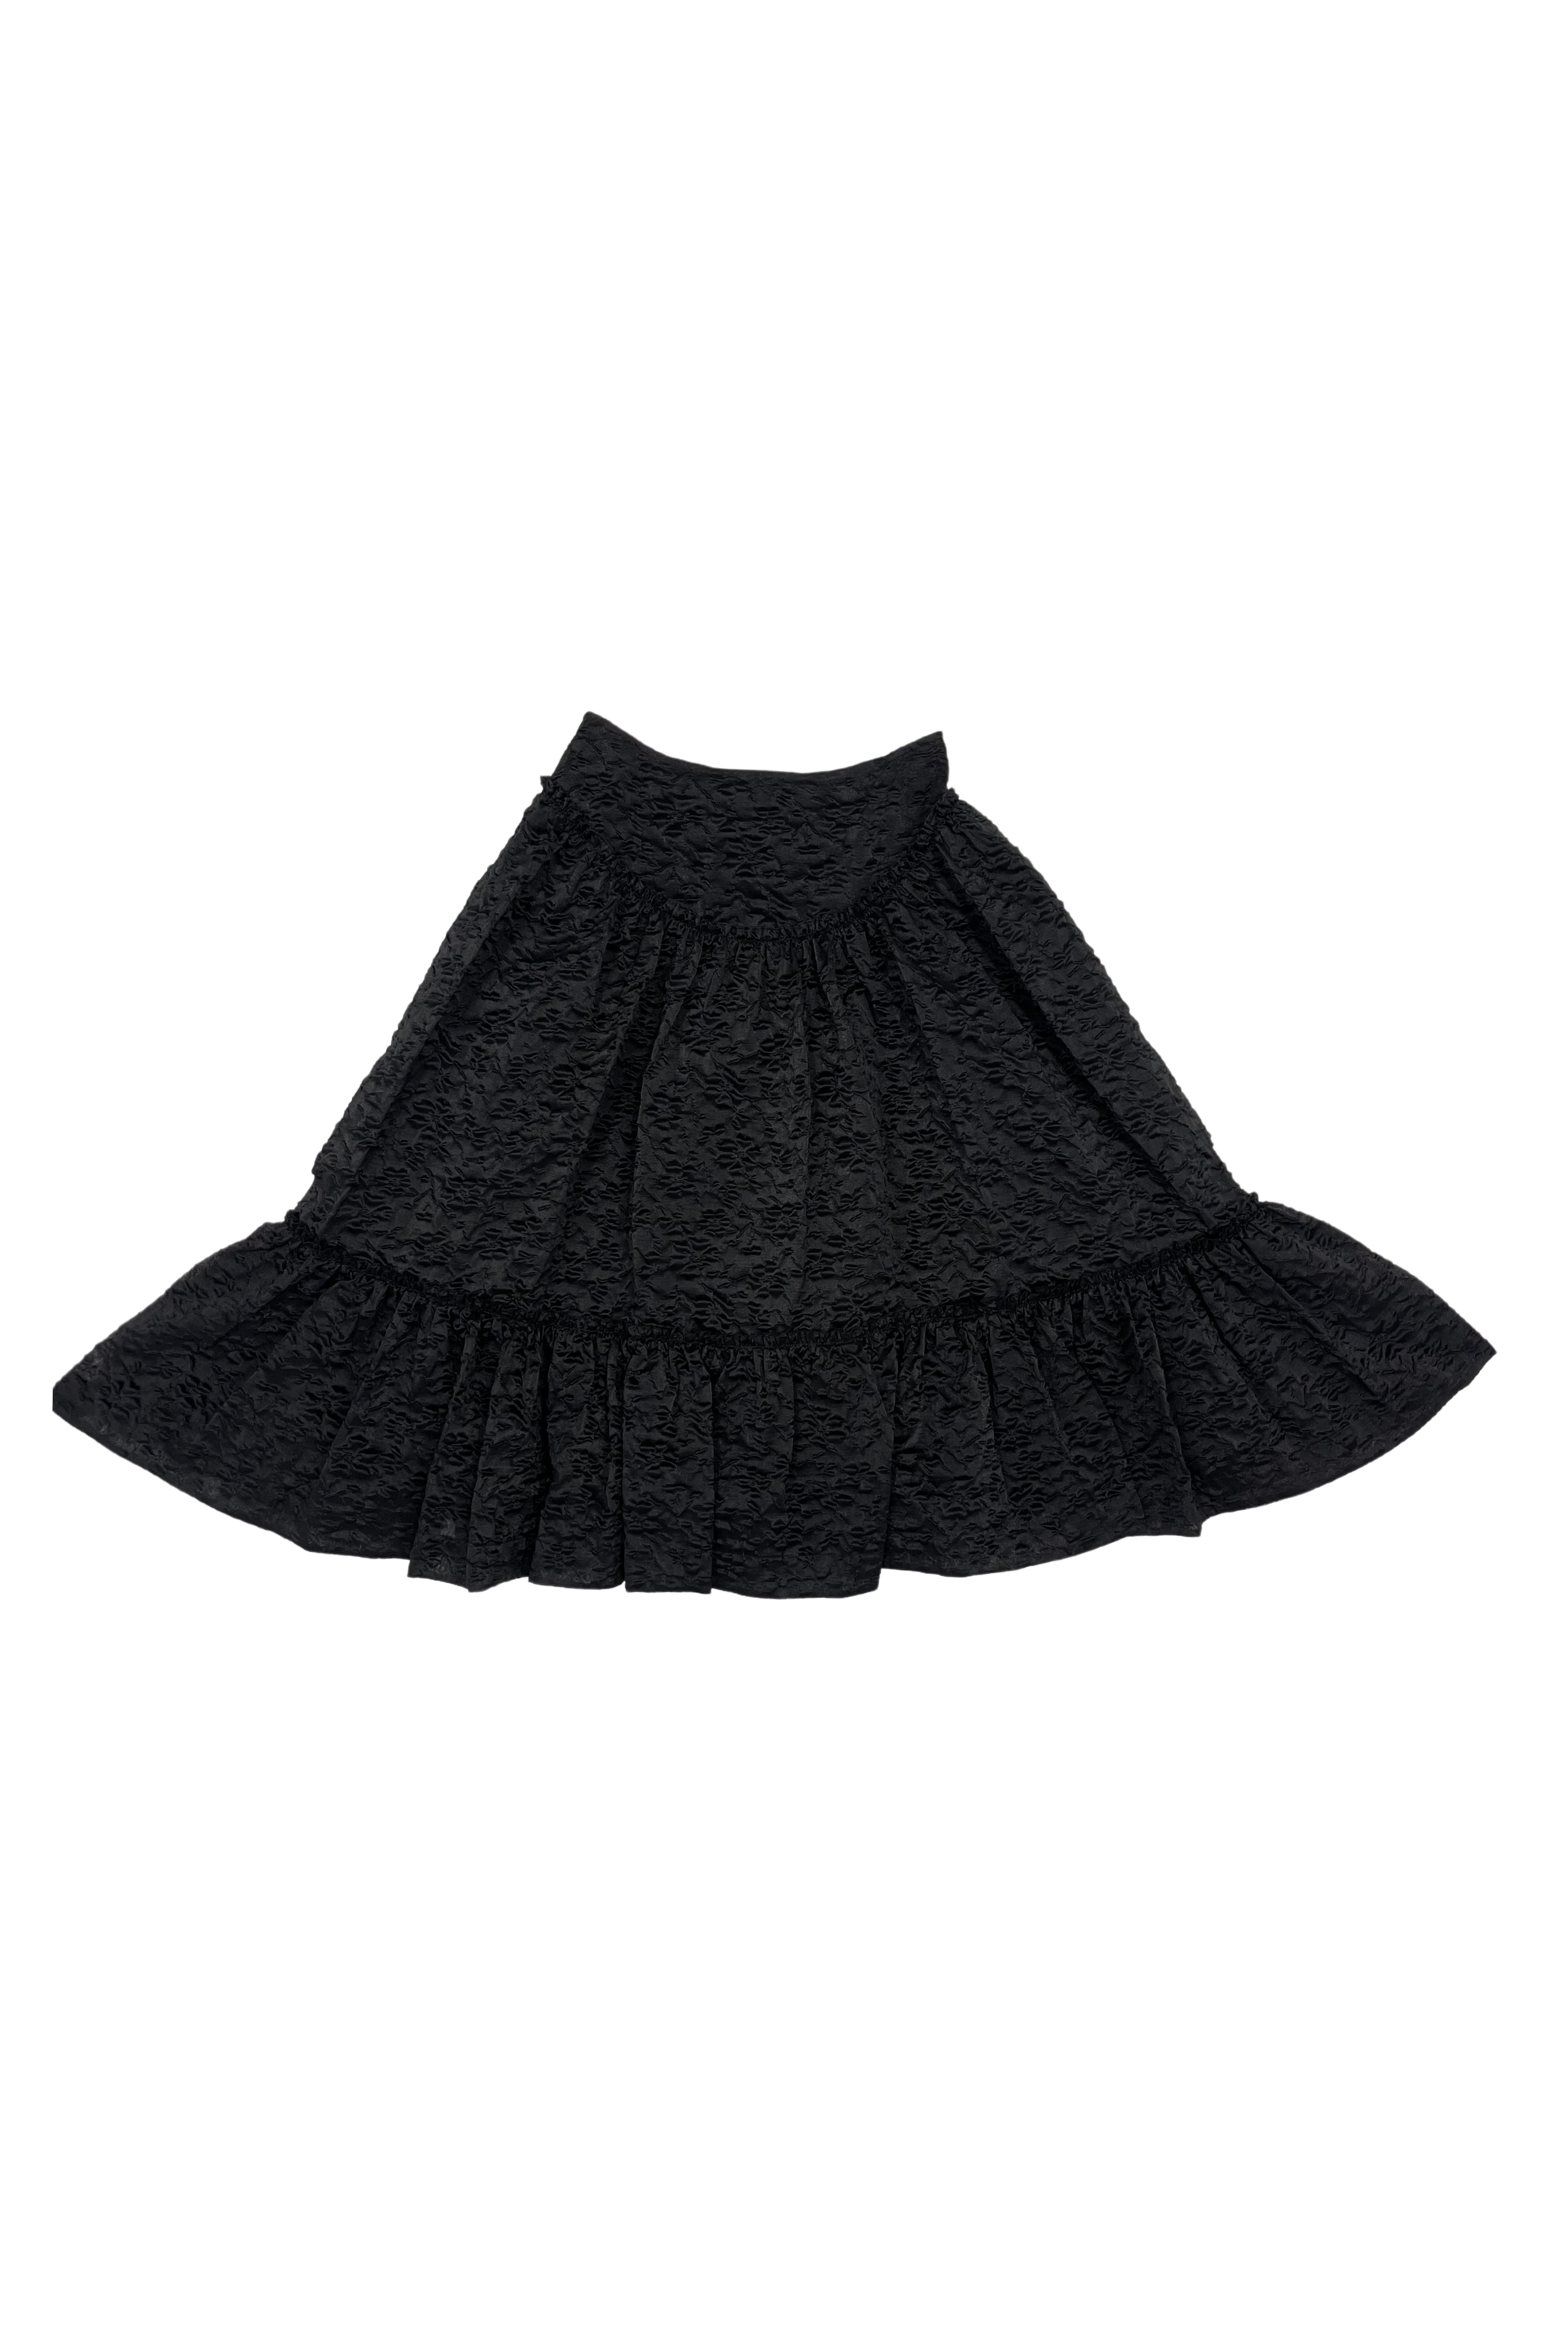 Simone Rocha Classic Ruffle Bias Skirt